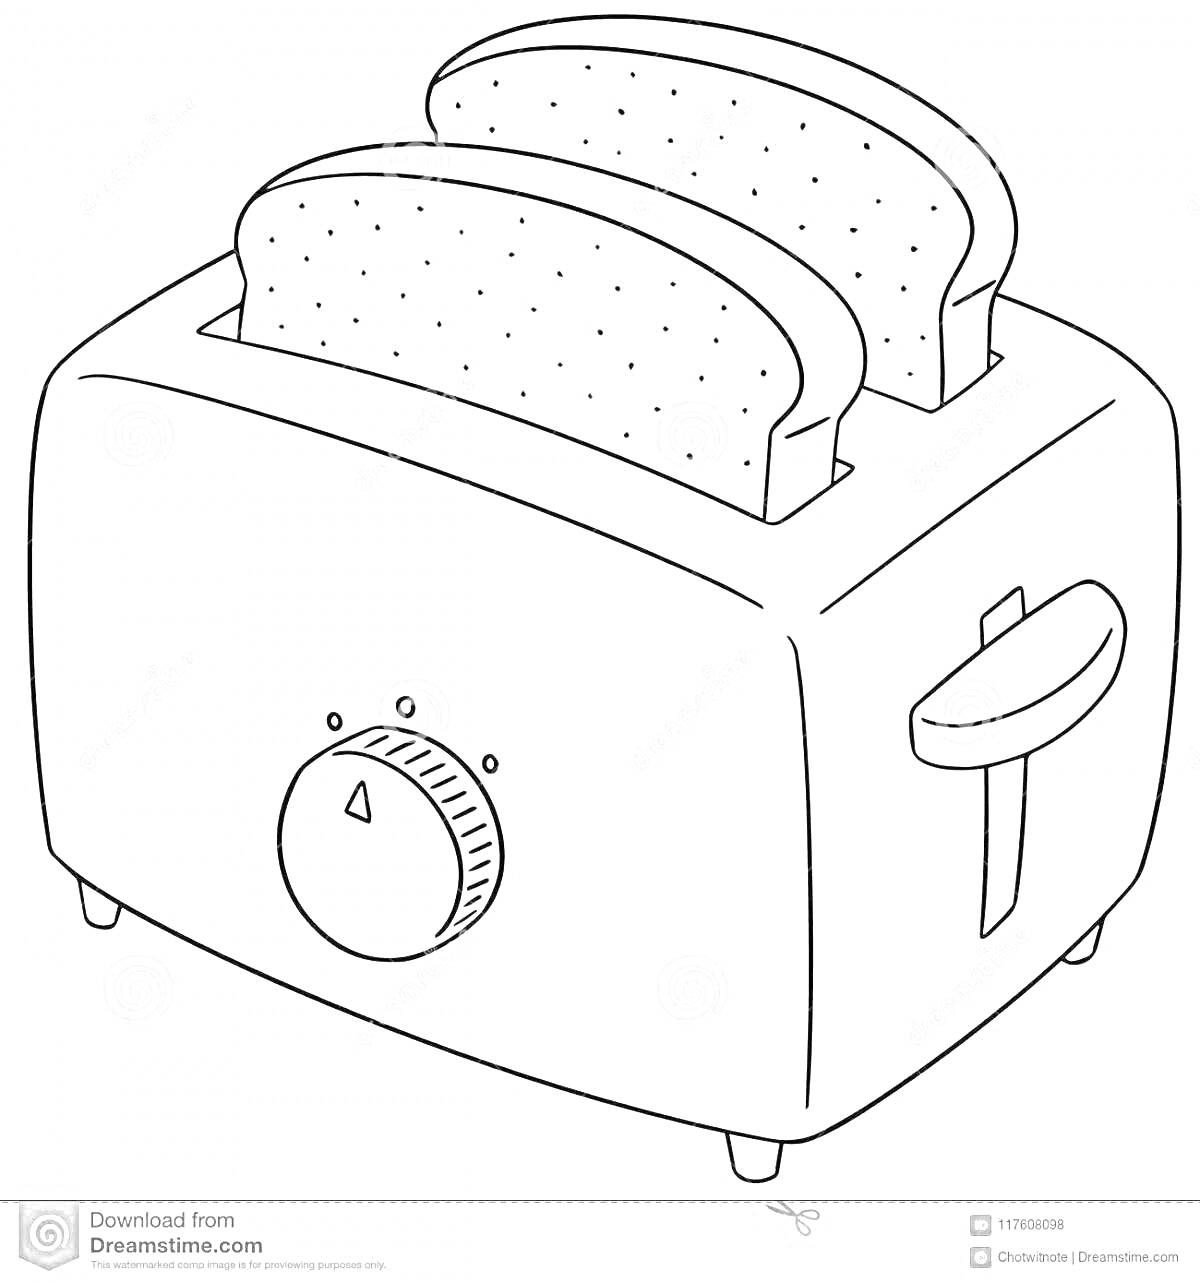 Раскраска тостер с двумя ломтиками хлеба и элементами управления (регулятор и рычаг)